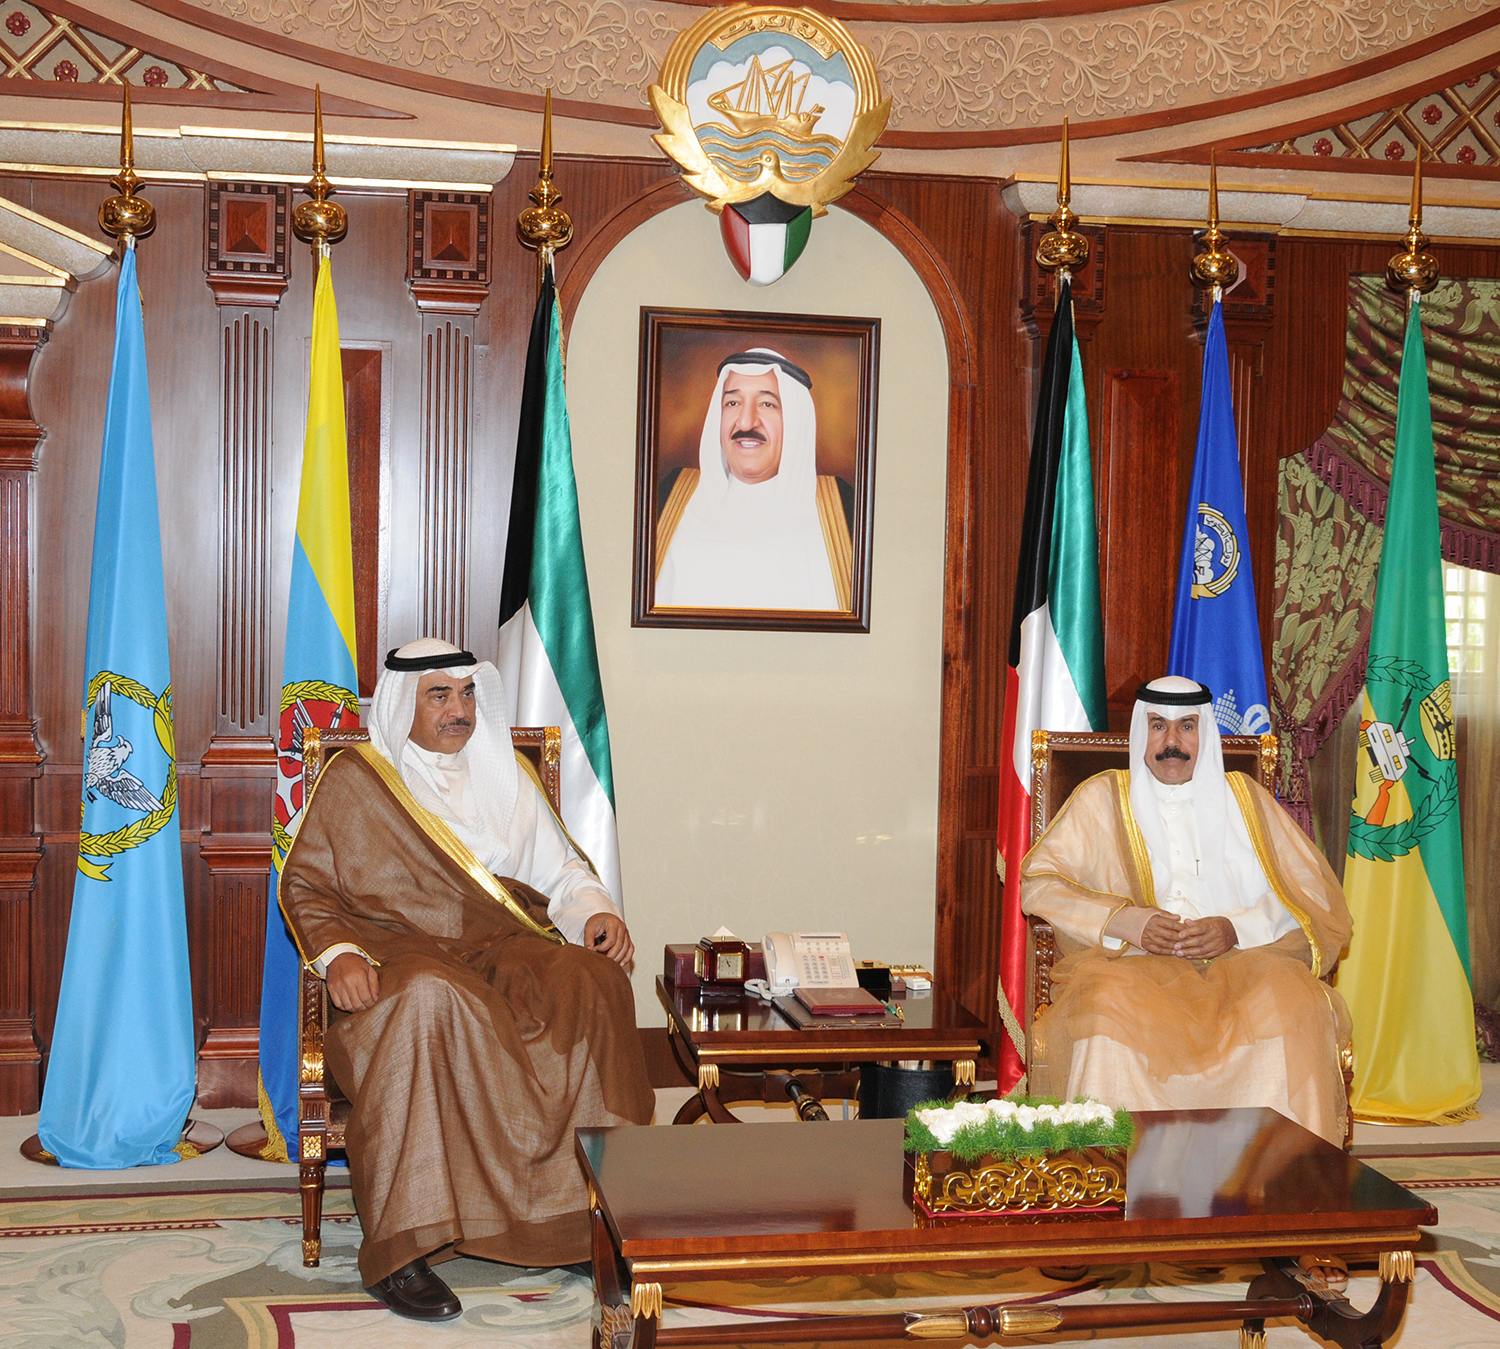 His Highness the Crown Prince Sheikh Nawaf Al-Ahmad Al-Jaber Al-Sabah receives Acting Prime Minister and Foreign Minister Sheikh Sabah Al-Khaled Al-Hamad Al-Sabah